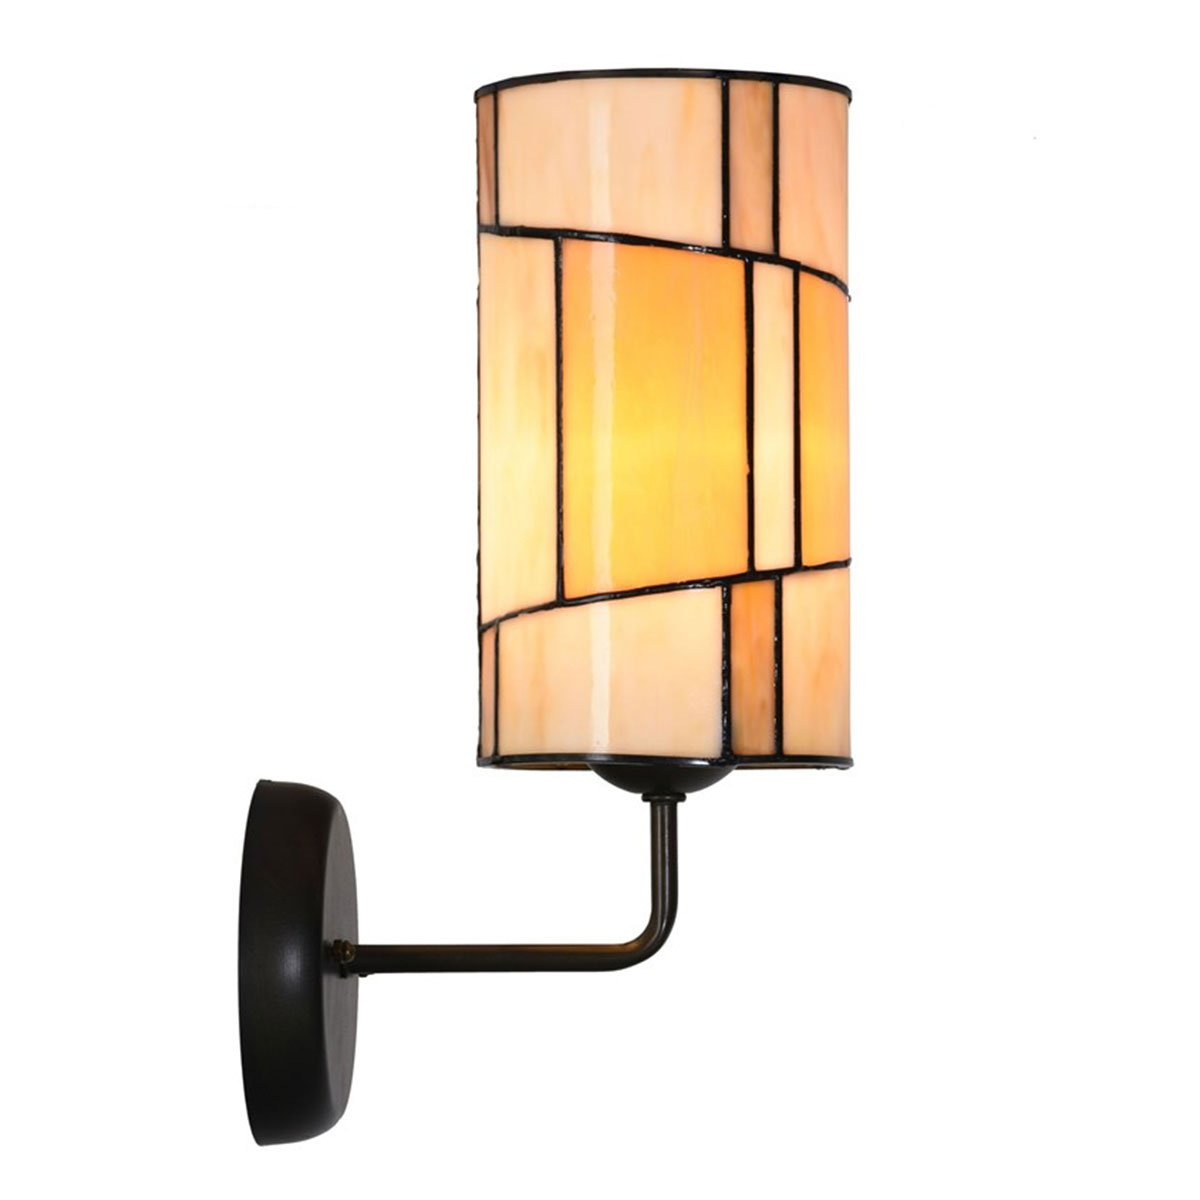 Wandleuchte mit zylindrischem Tiffanyglas-Schirm: Eingeschaltet: gemütliches warmes Licht dank der weißen und rötlichen Glas-Scheiben